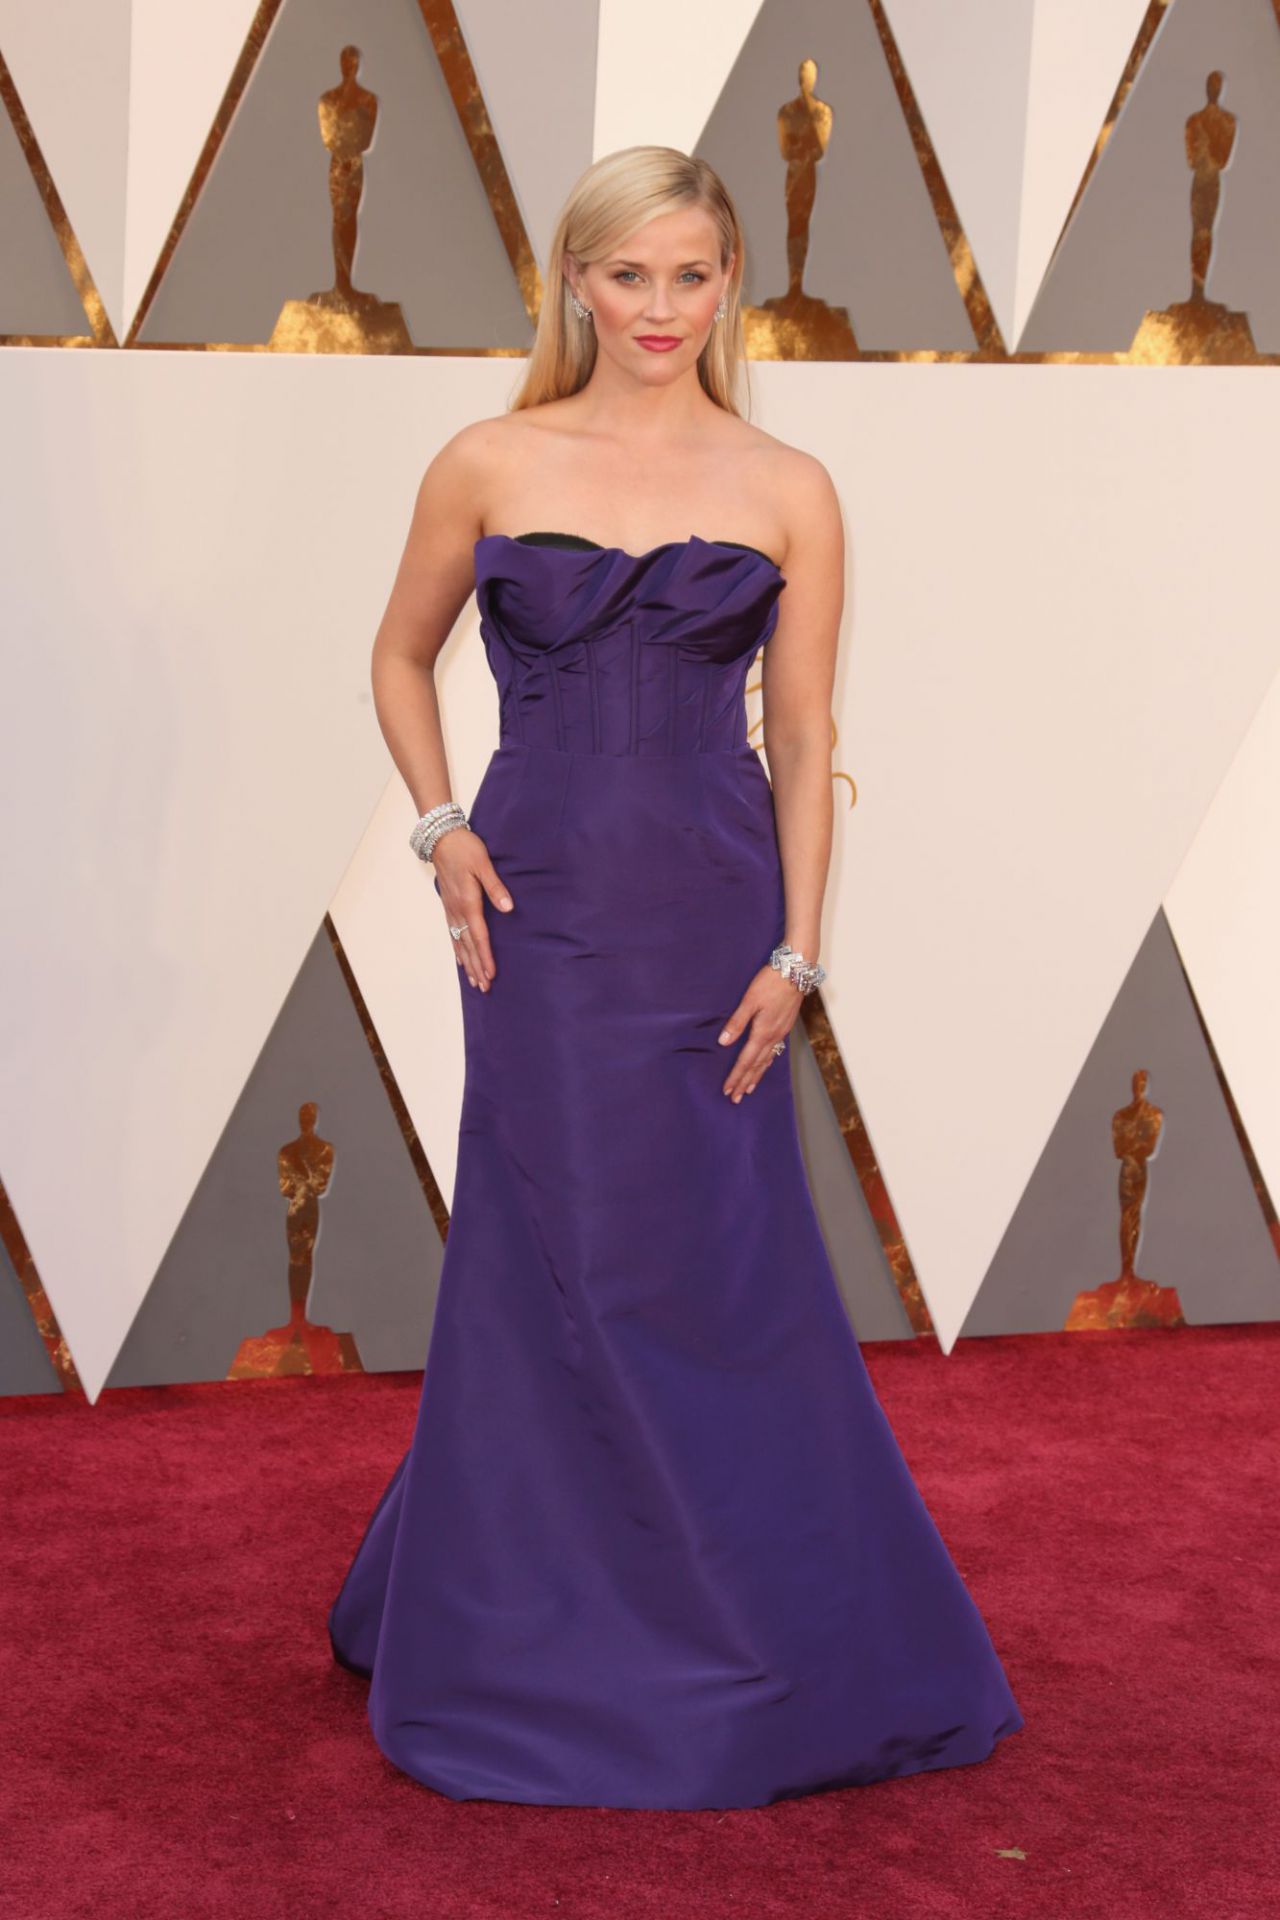 9. Parece ser que la invitación a los Oscar de Reese Wiherspoon llegó tarde, porque escoger eso y tener el valor de ponértelo… con la de vestidos que hay que se les puede llamar vestido.